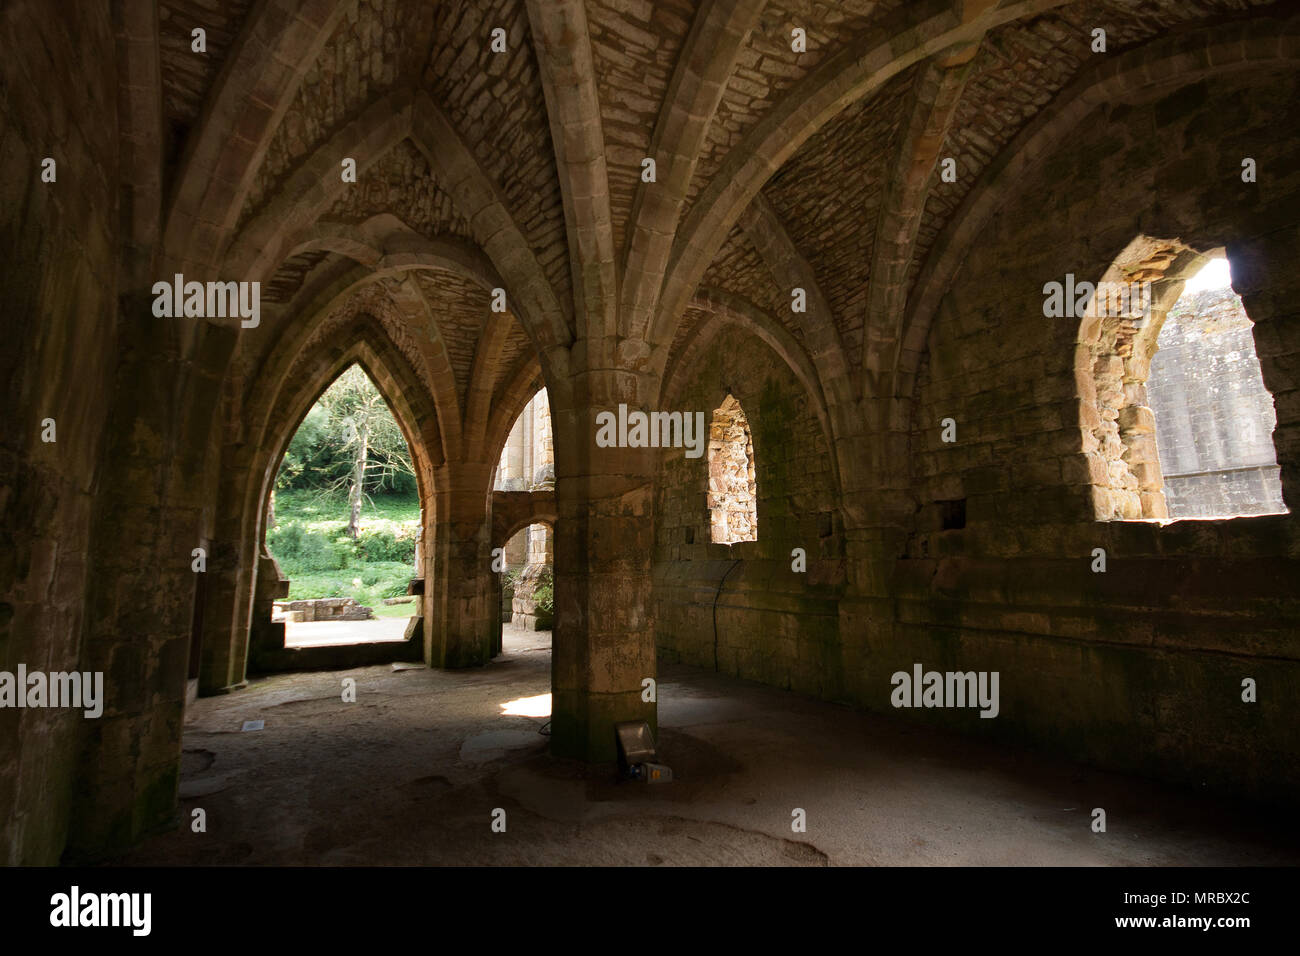 La arquitectura gótica en el interior de las ruinas de un monasterio de Fountains Abbey, Ripon, UK Foto de stock